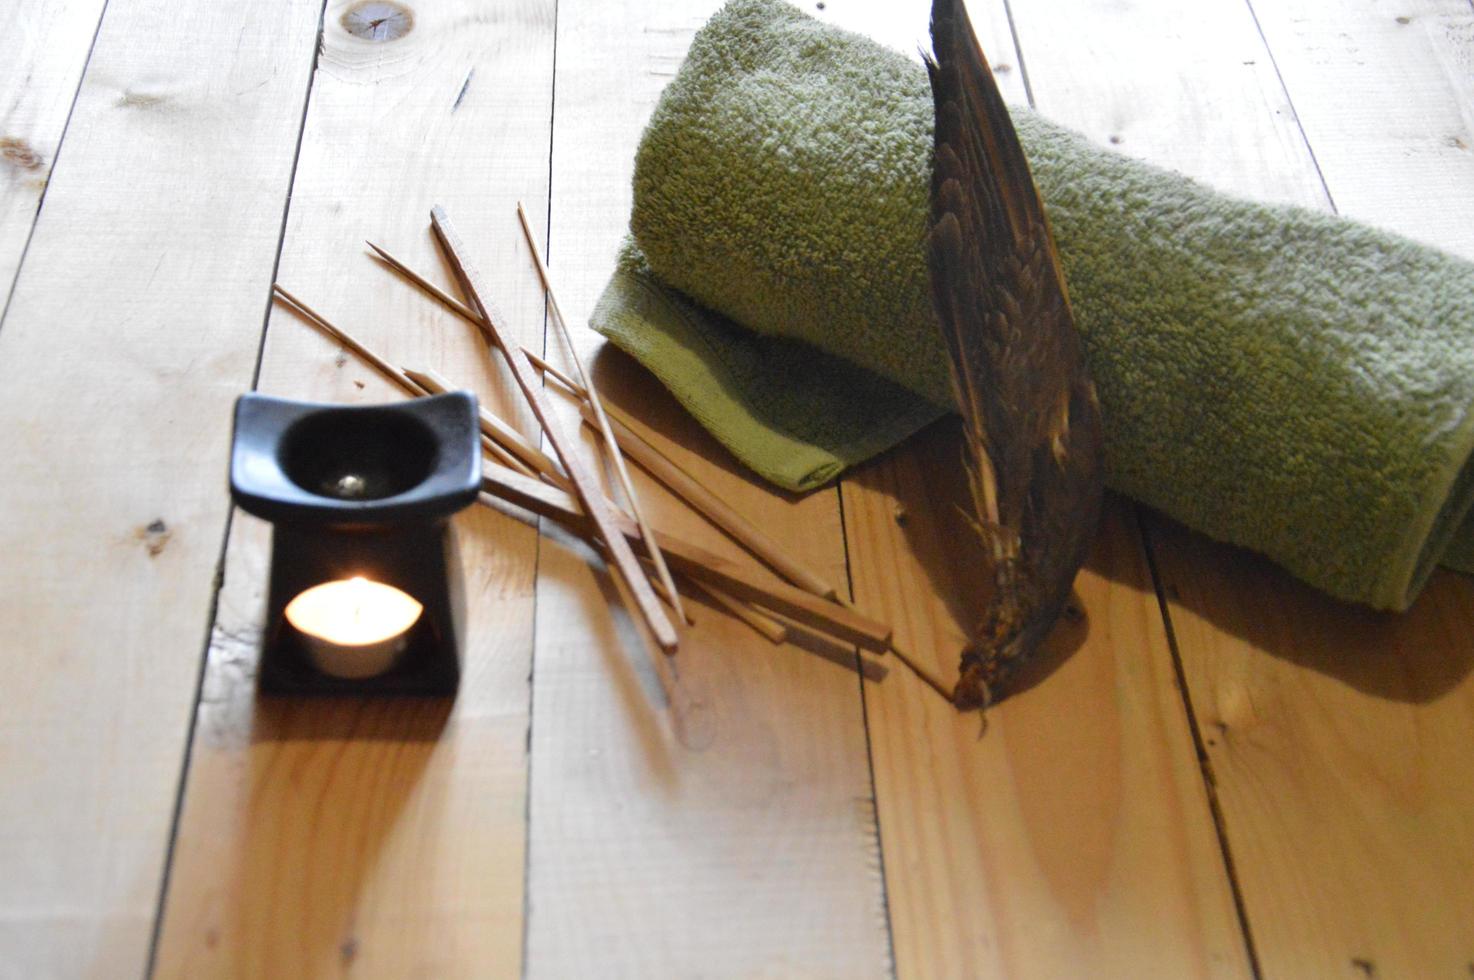 artigos de spa para sauna e relaxamento foto